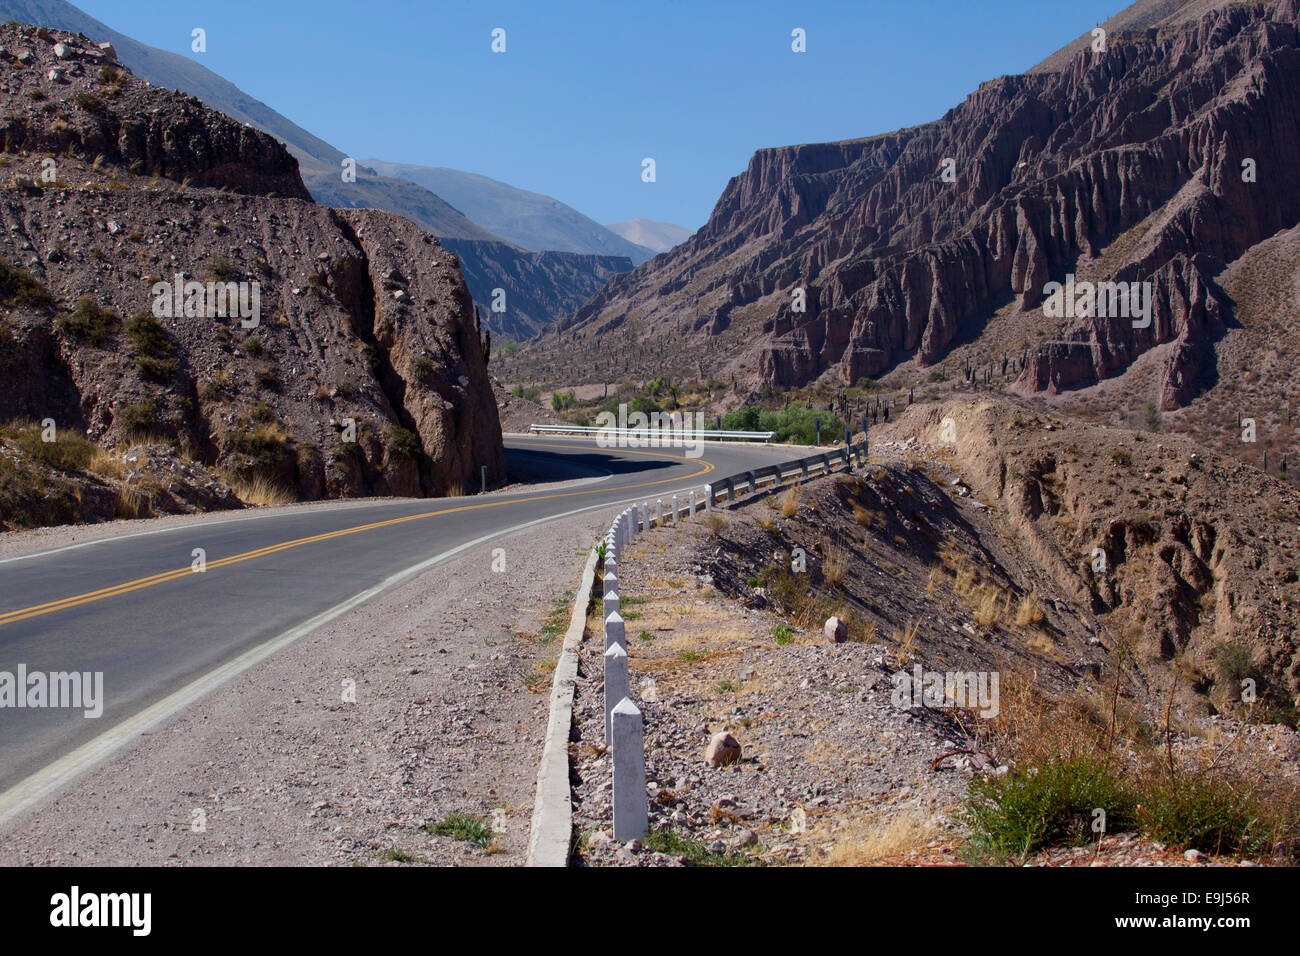 Straße in die Berge. Puna de Atacama, Salta und Jujuy. Argentinien. Stockfoto